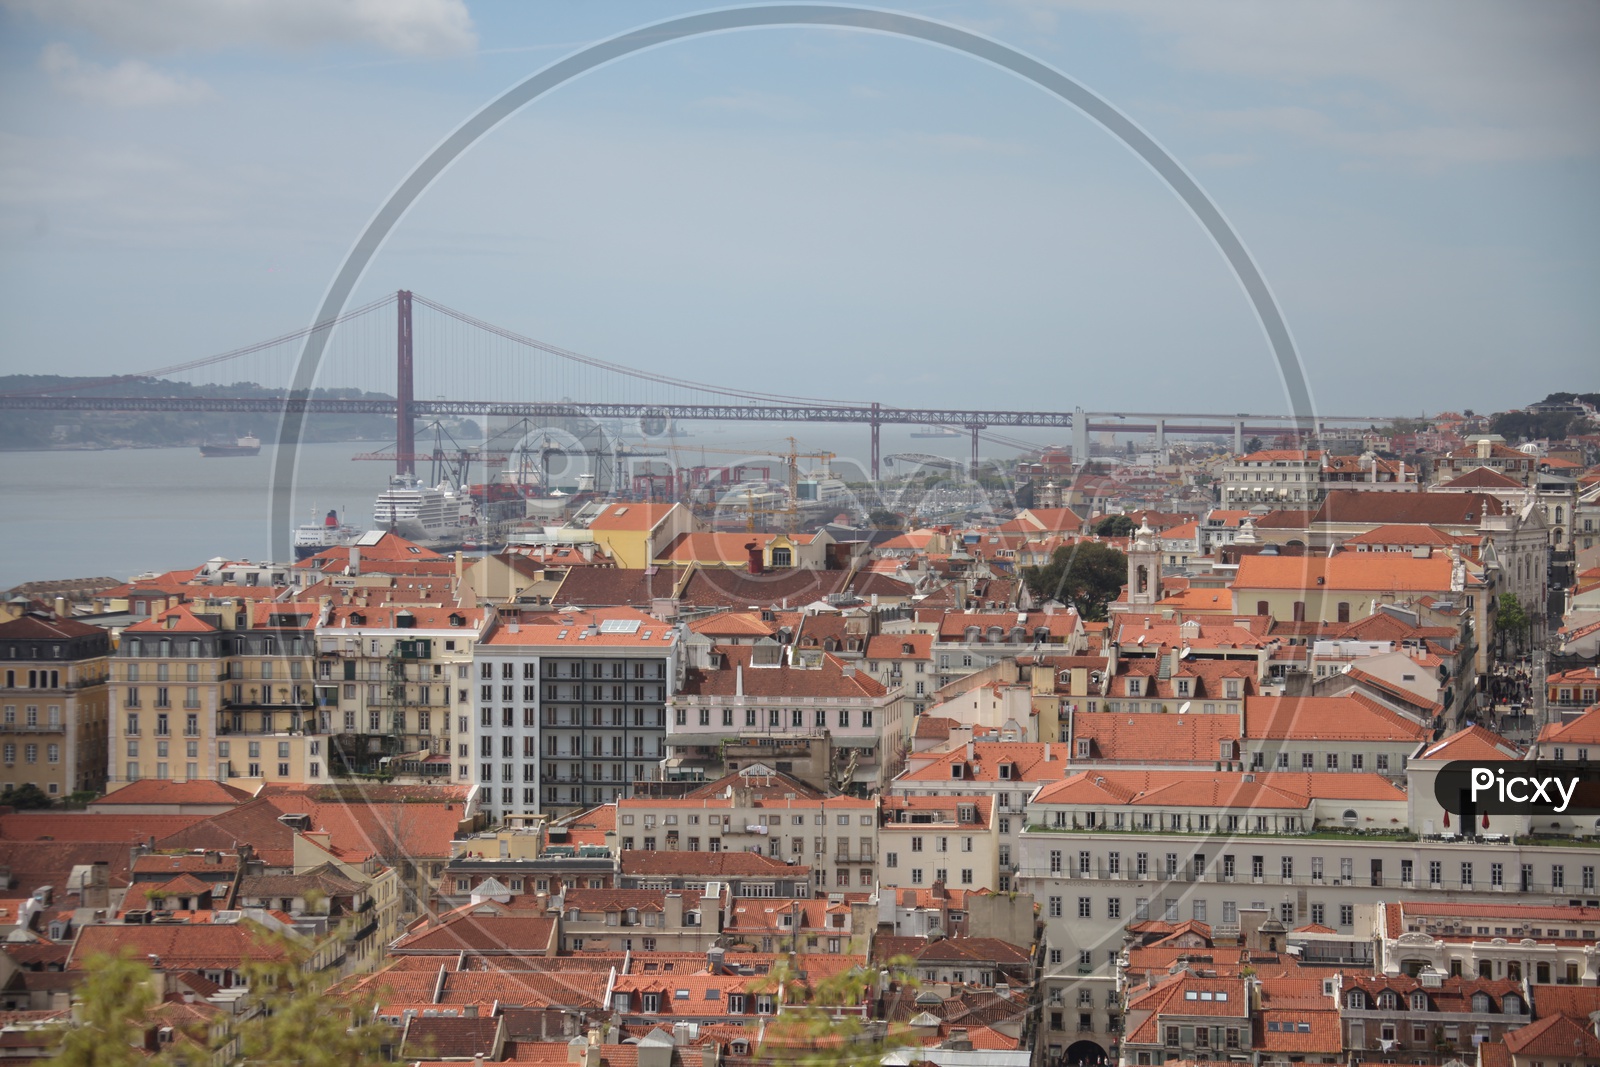 Lisbon city view and 25 De Abril suspension bridge to the left